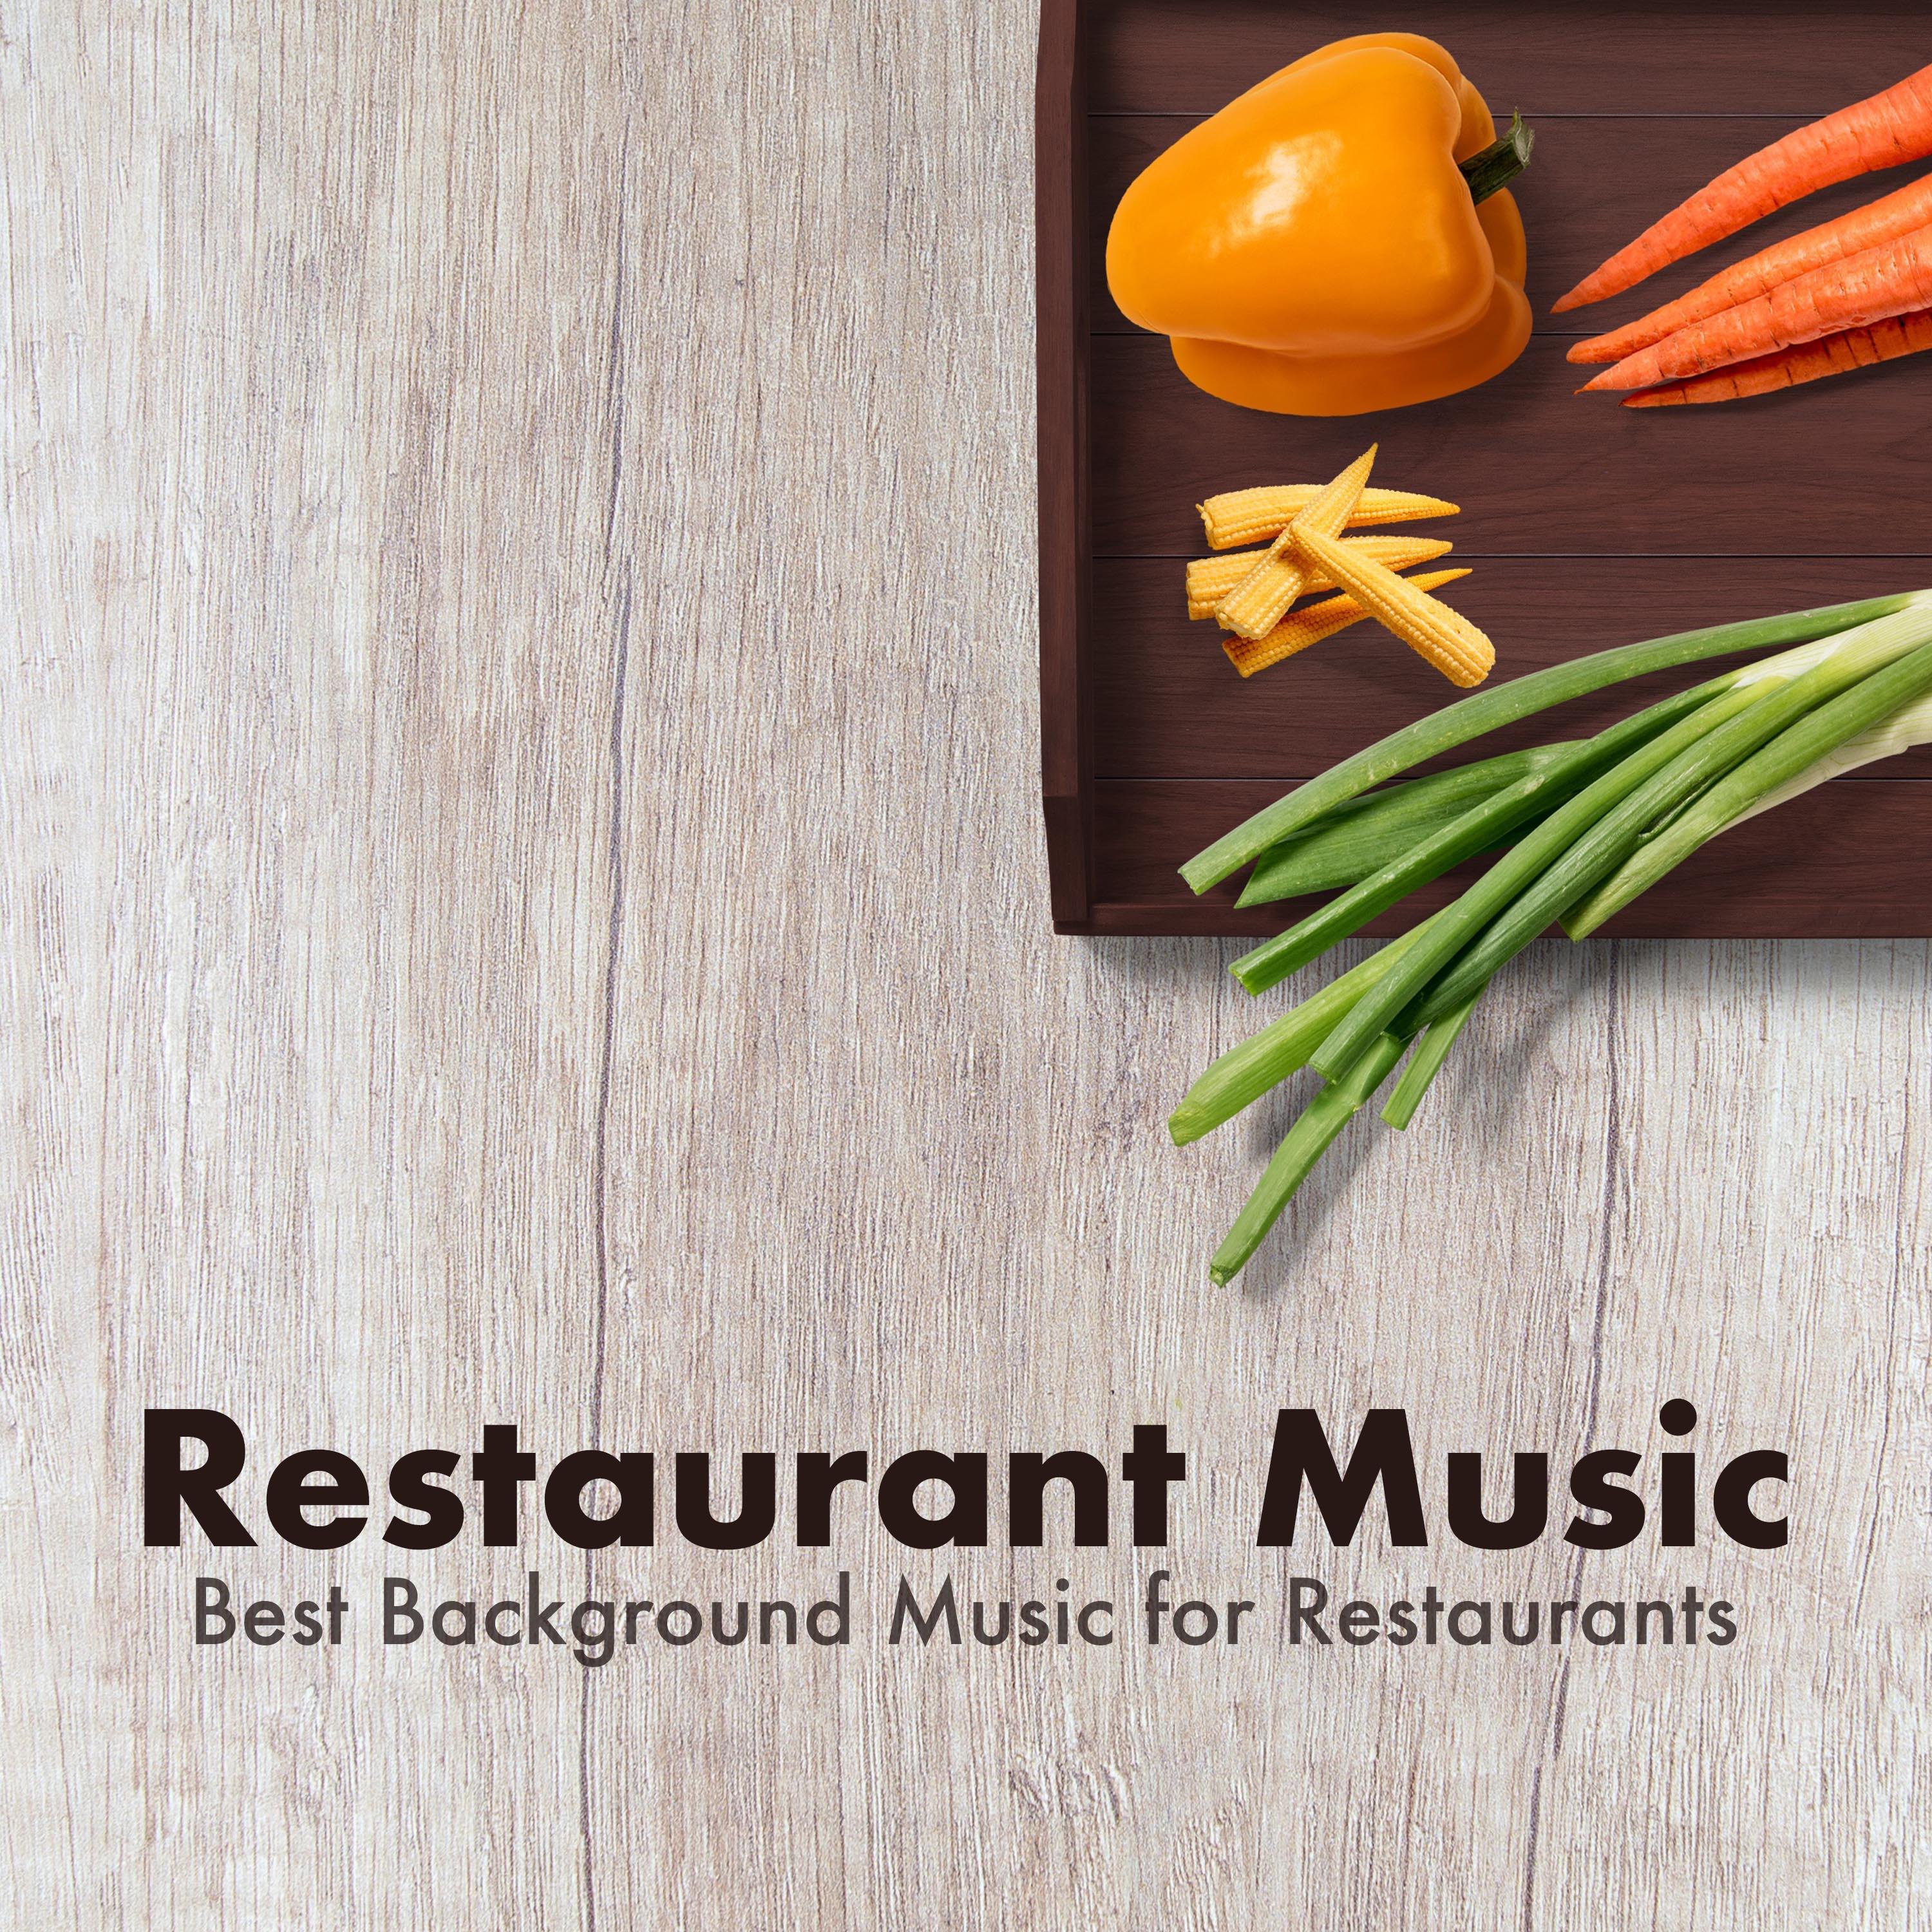 Restaurant Music: Best Background Music for Restaurants